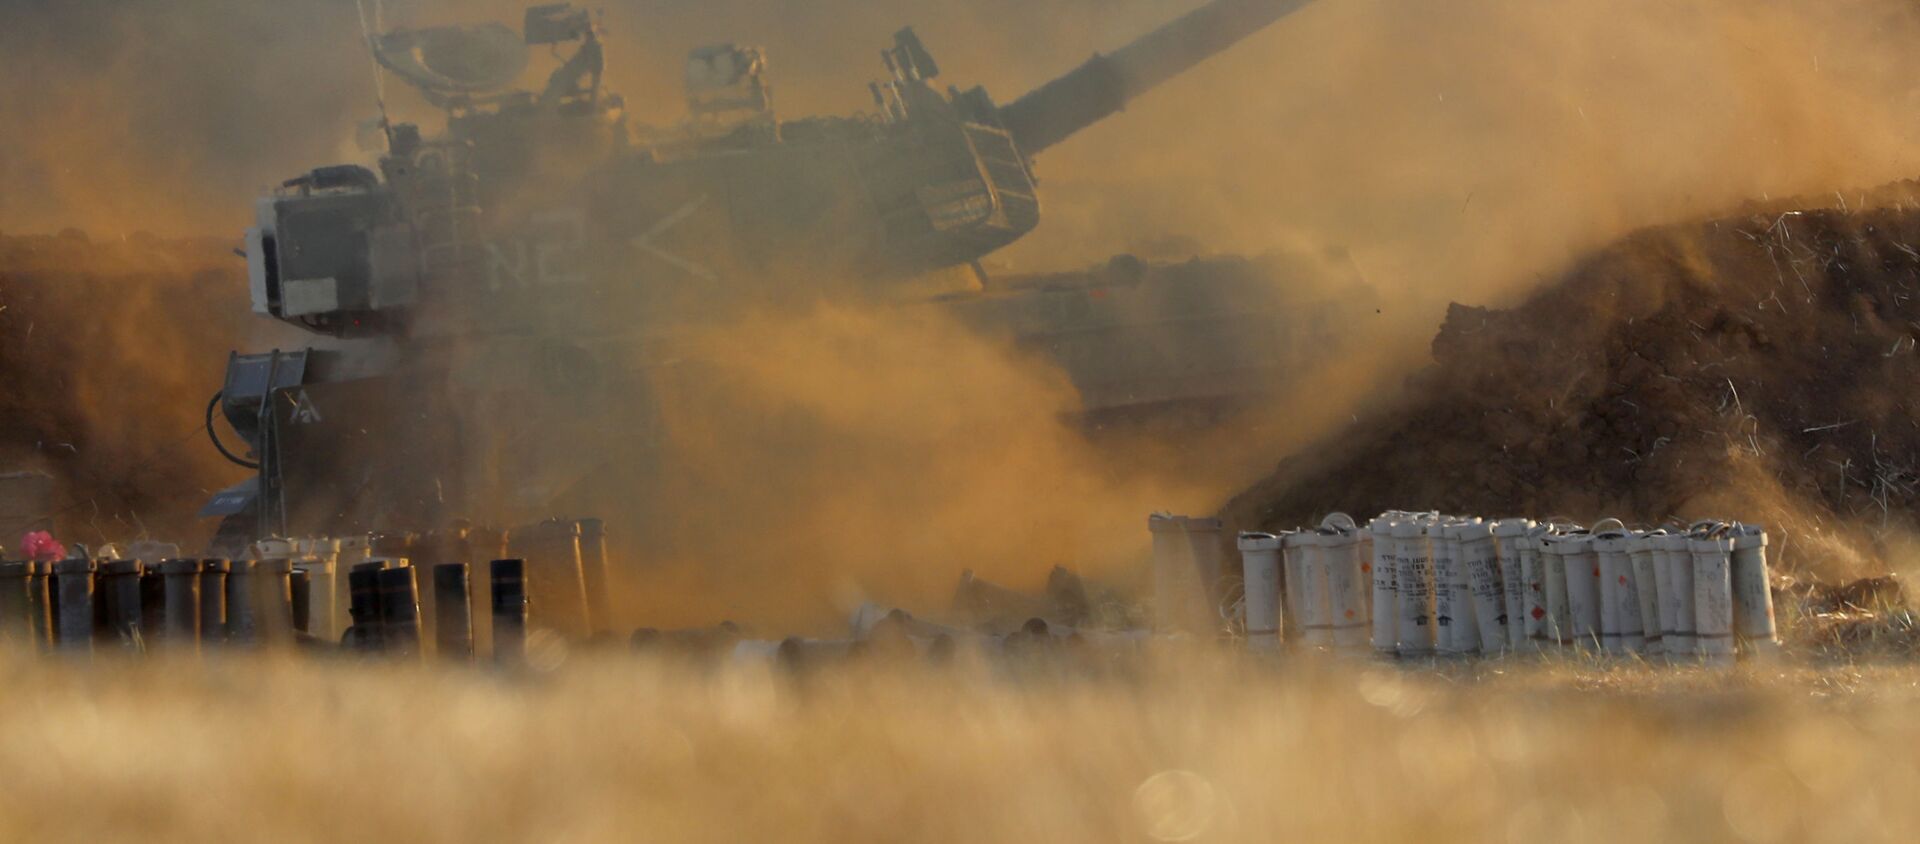 Боевые действия в секторе Газа - израильская артиллерия ведет обстрел позиций противника - Sputnik Грузия, 1920, 14.05.2021